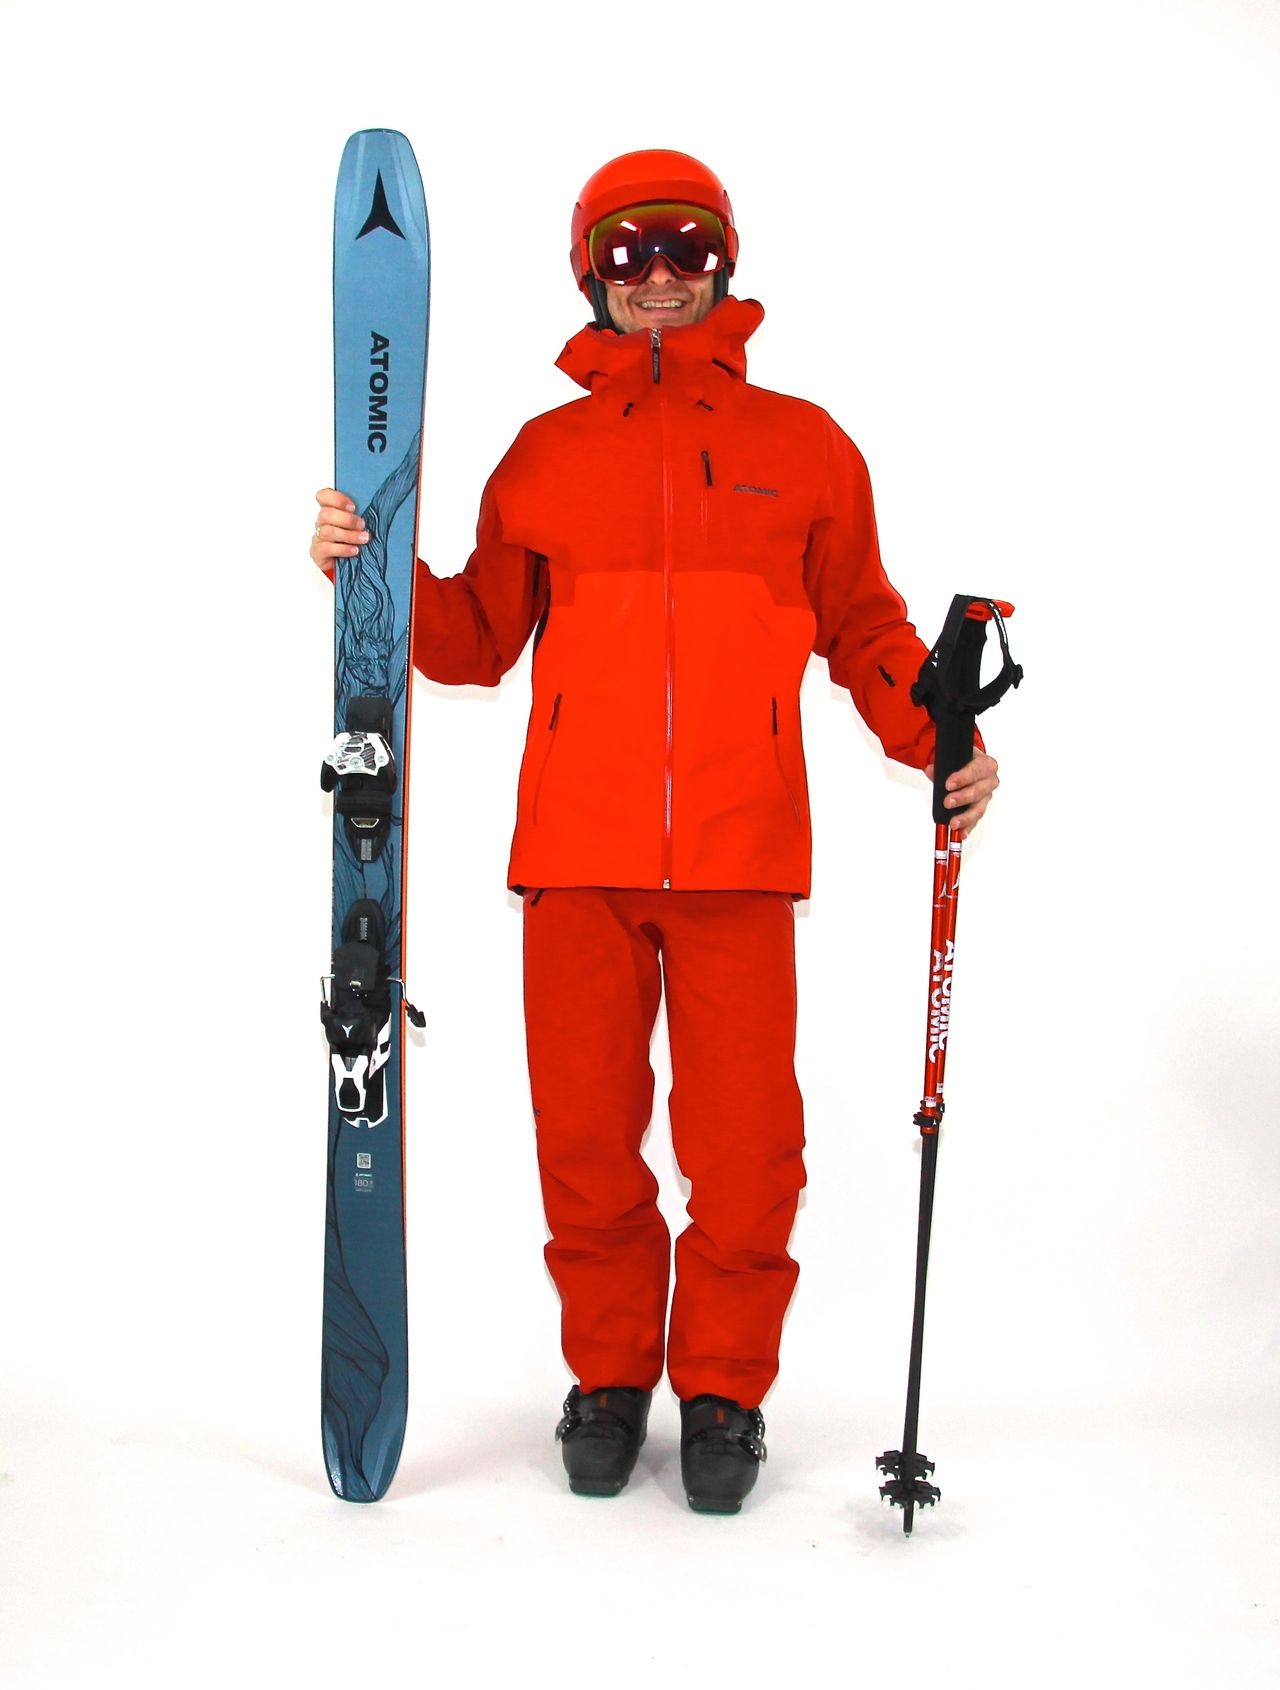 Qué talla de bastón de esquí elegir?